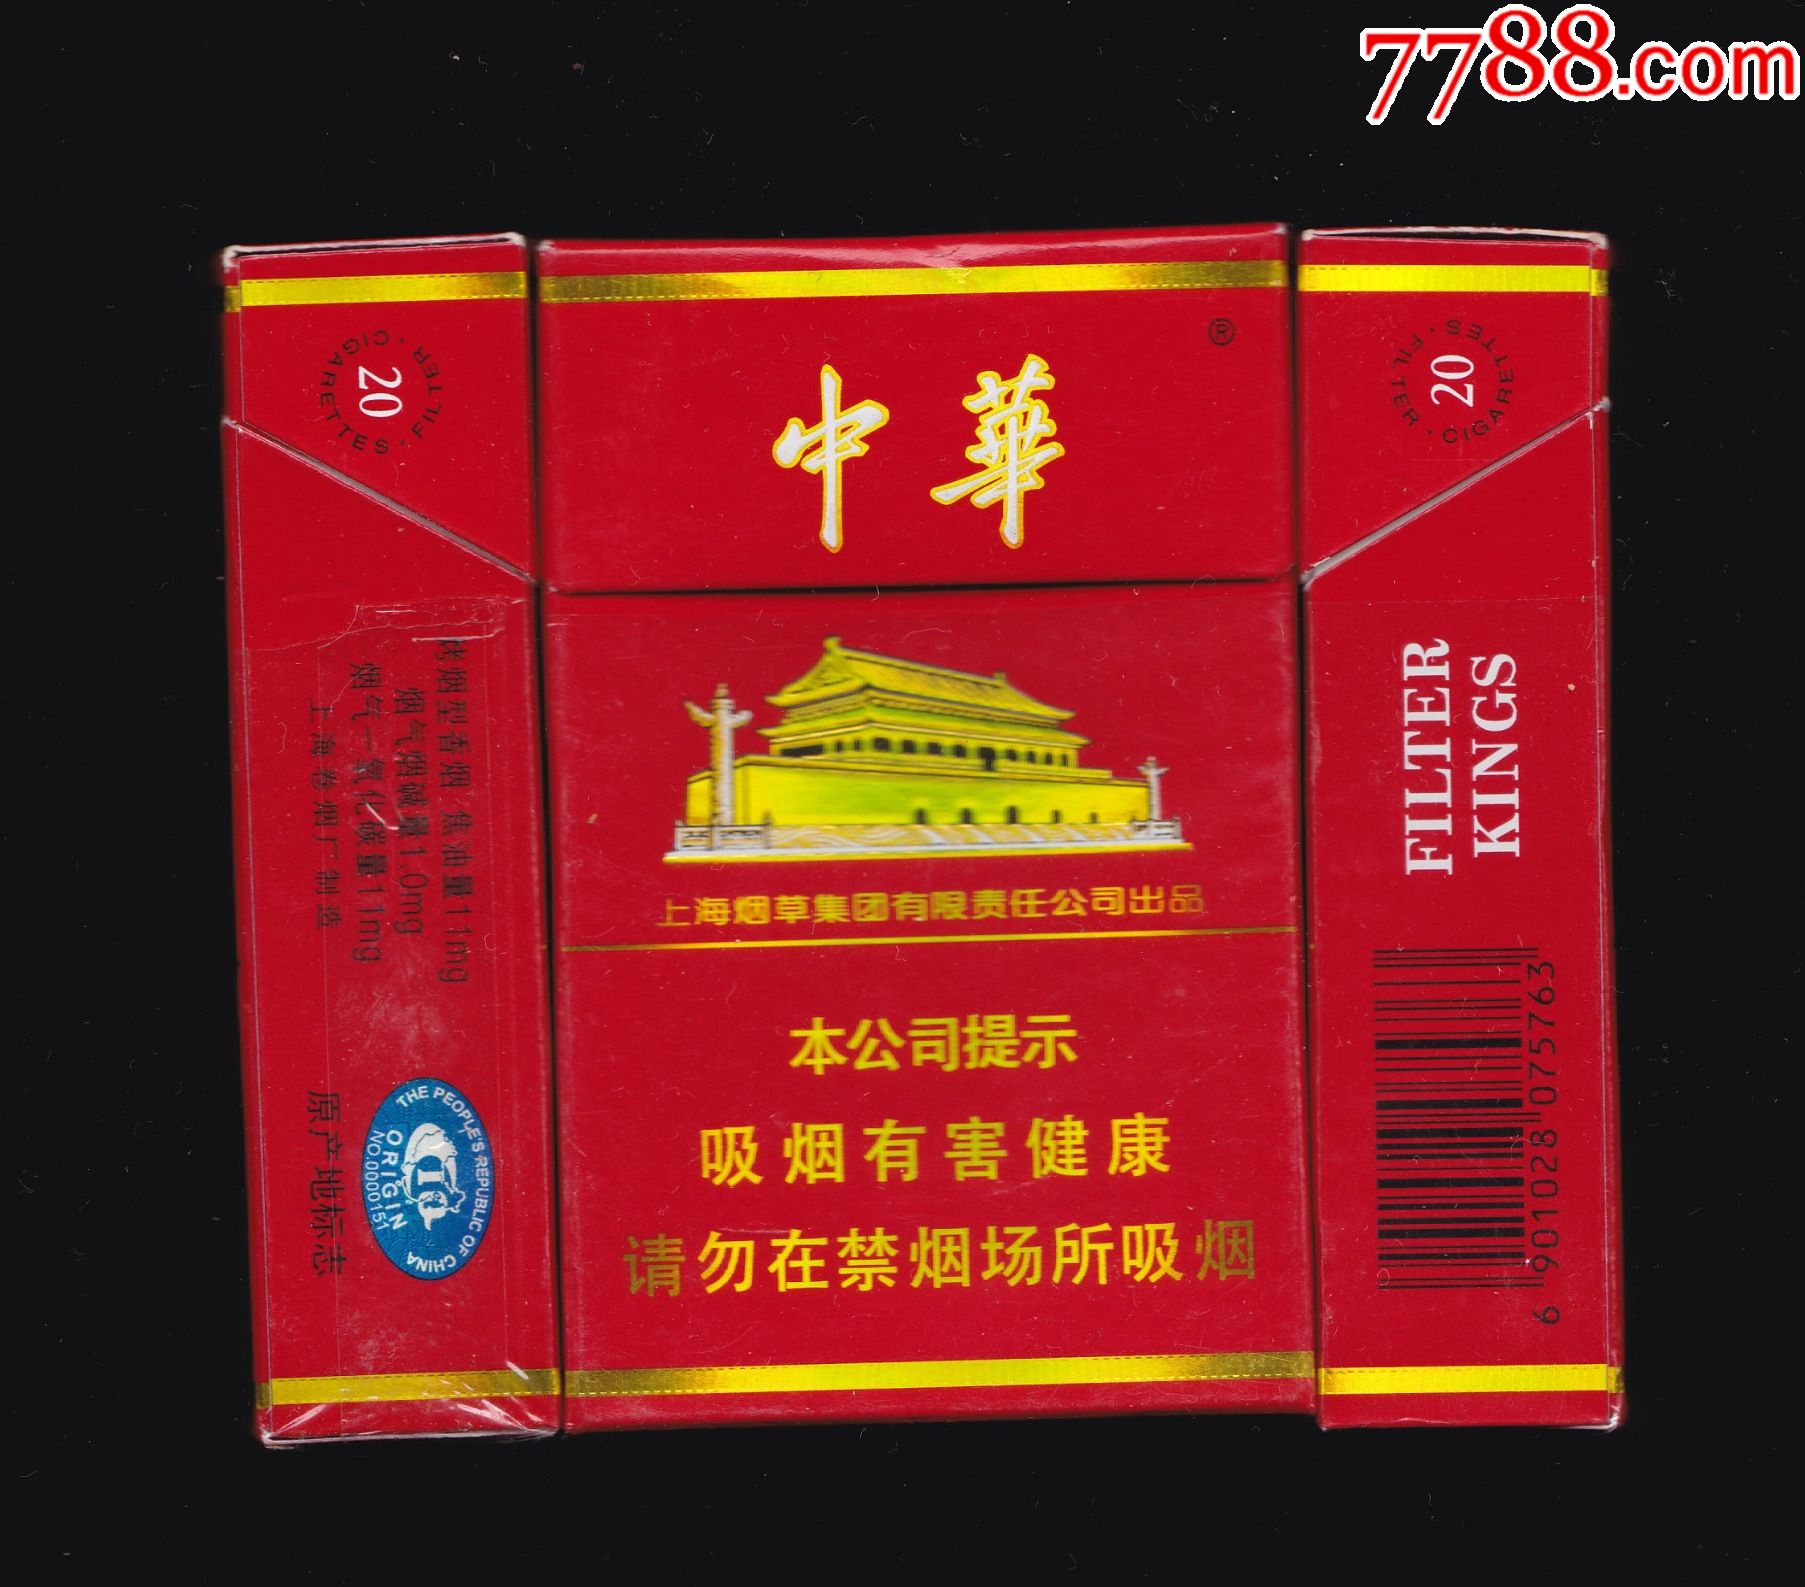 中华烟硬盒中支图片